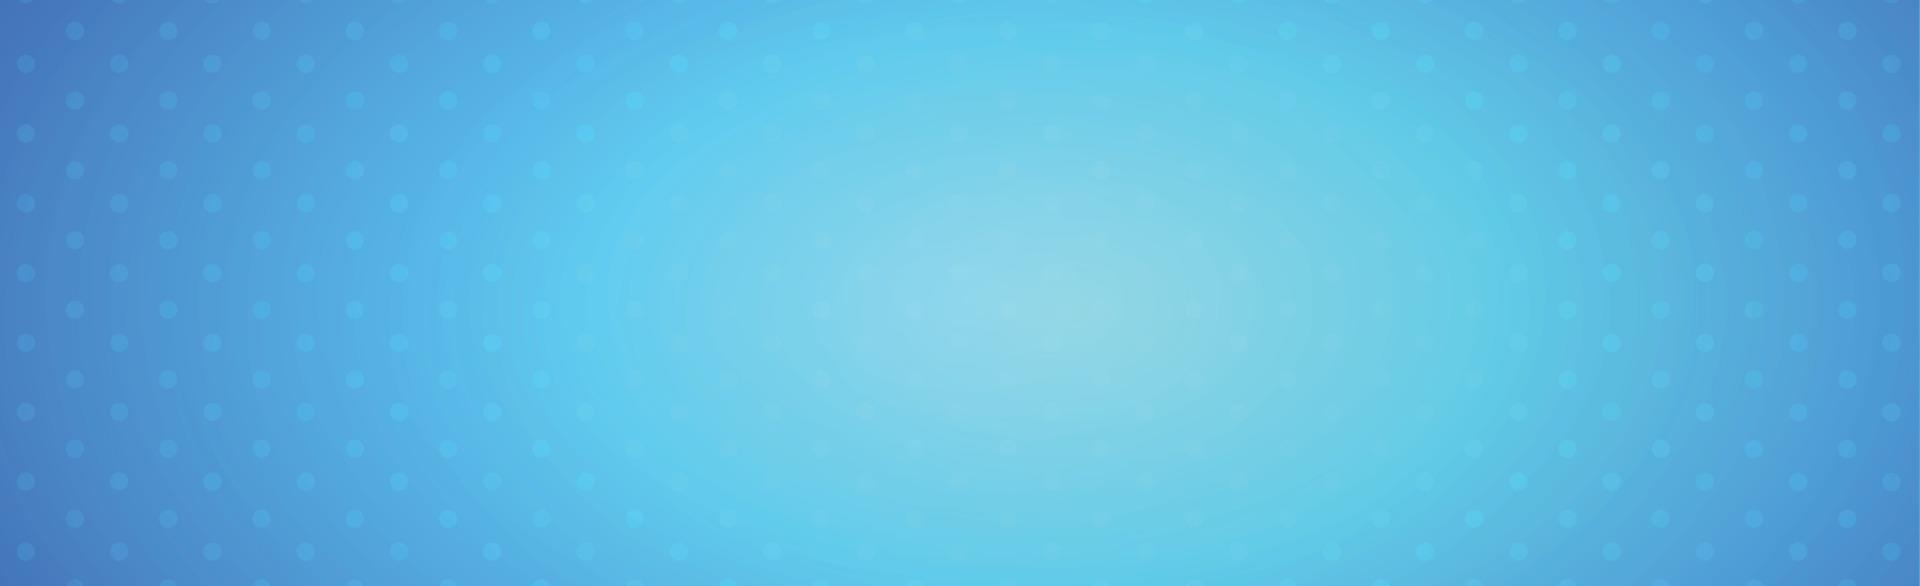 astratto sfondo blu con puntini bianchi - vettore